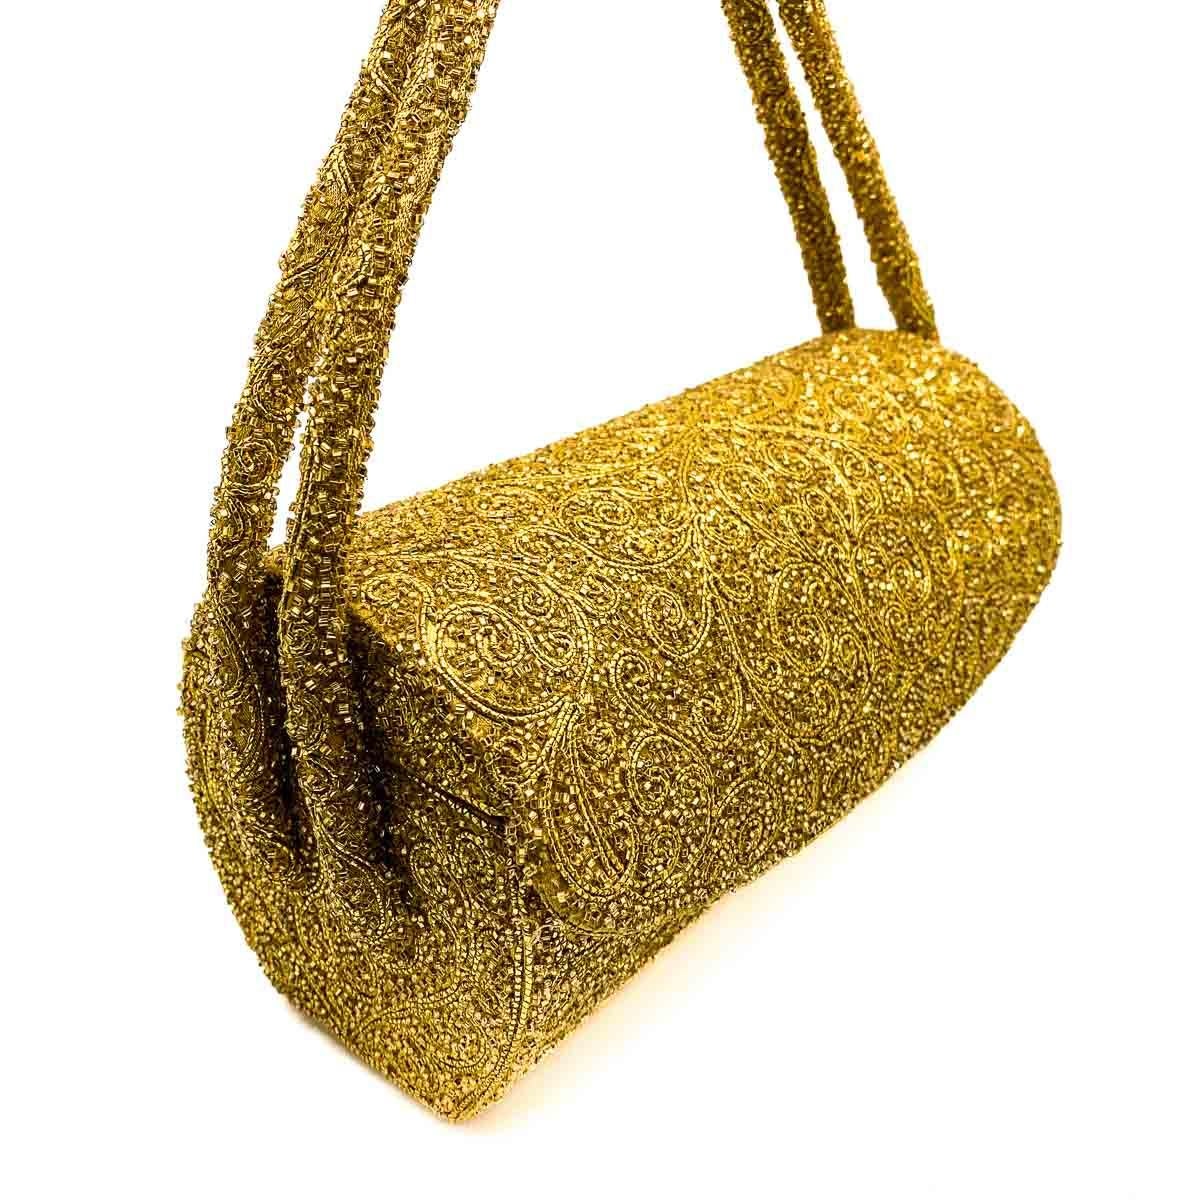 Eine fabelhafte und seltene Vintage Nettie Rosenstein Abendtasche. Das von Landschaftszylindern inspirierte Design wird von einem Doppelgriff gekrönt und besticht durch goldene Mikroperlen in einem Blattmuster vor einem goldenen Satinhintergrund.